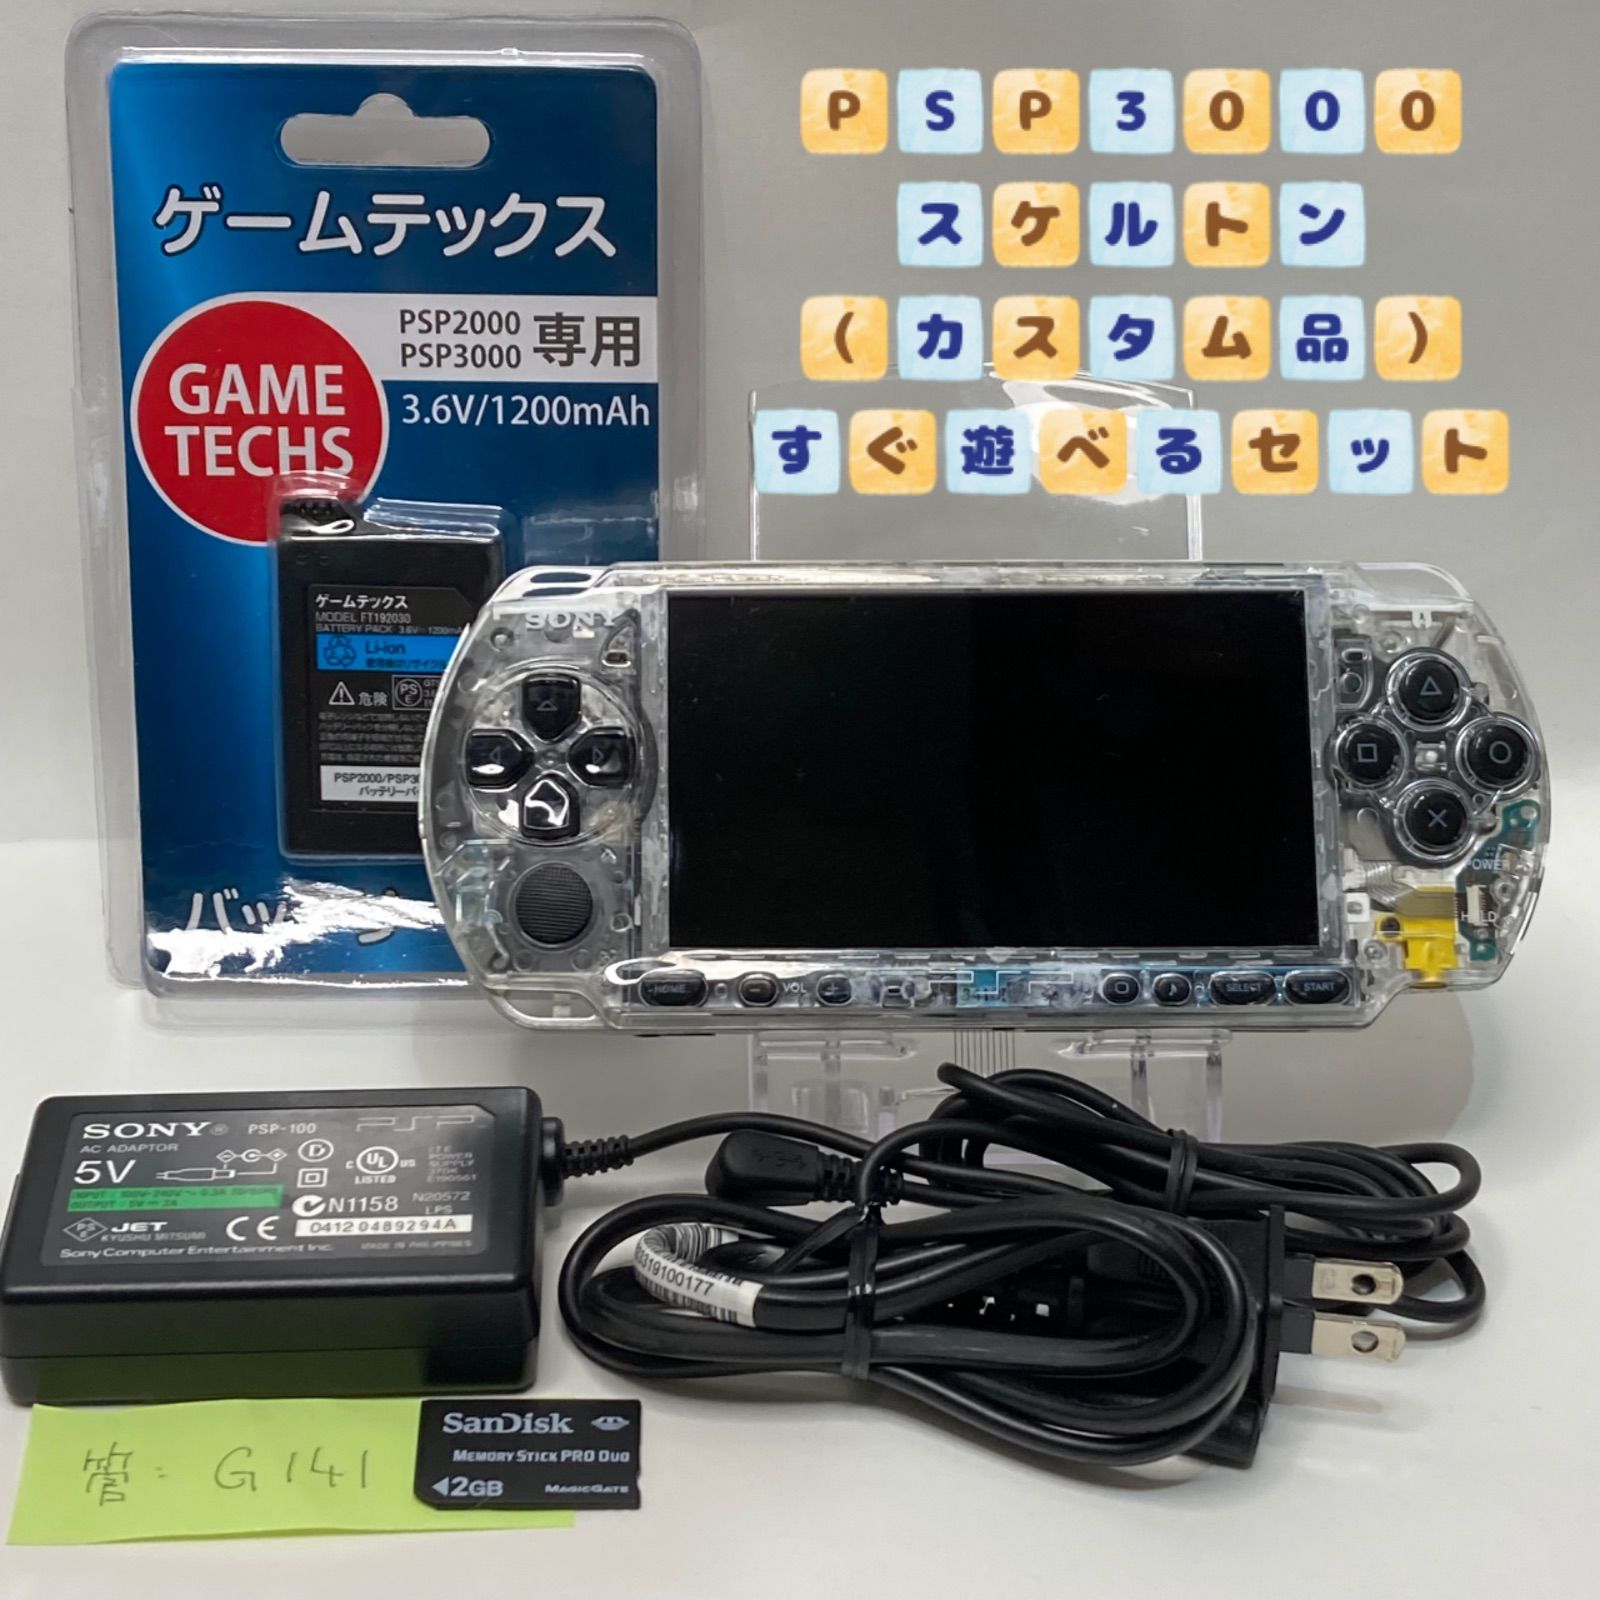 【美品】PSP 3000 すぐ遊べるセット(ホワイト)